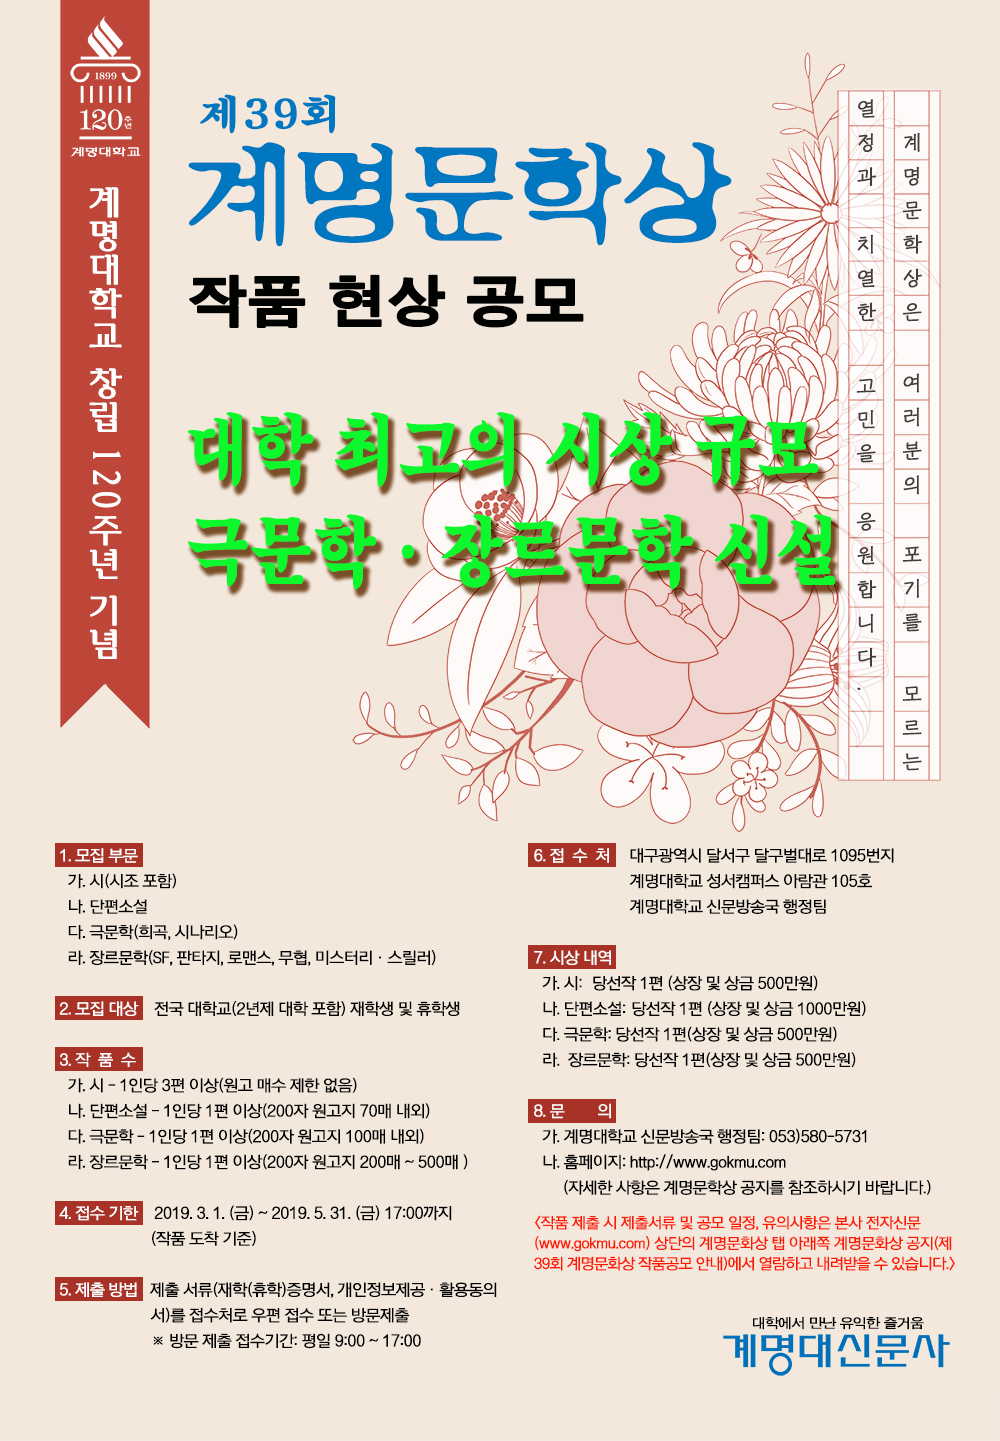  창립 120주년 기념 제39회 계명문학상 광고 포스터.jpg